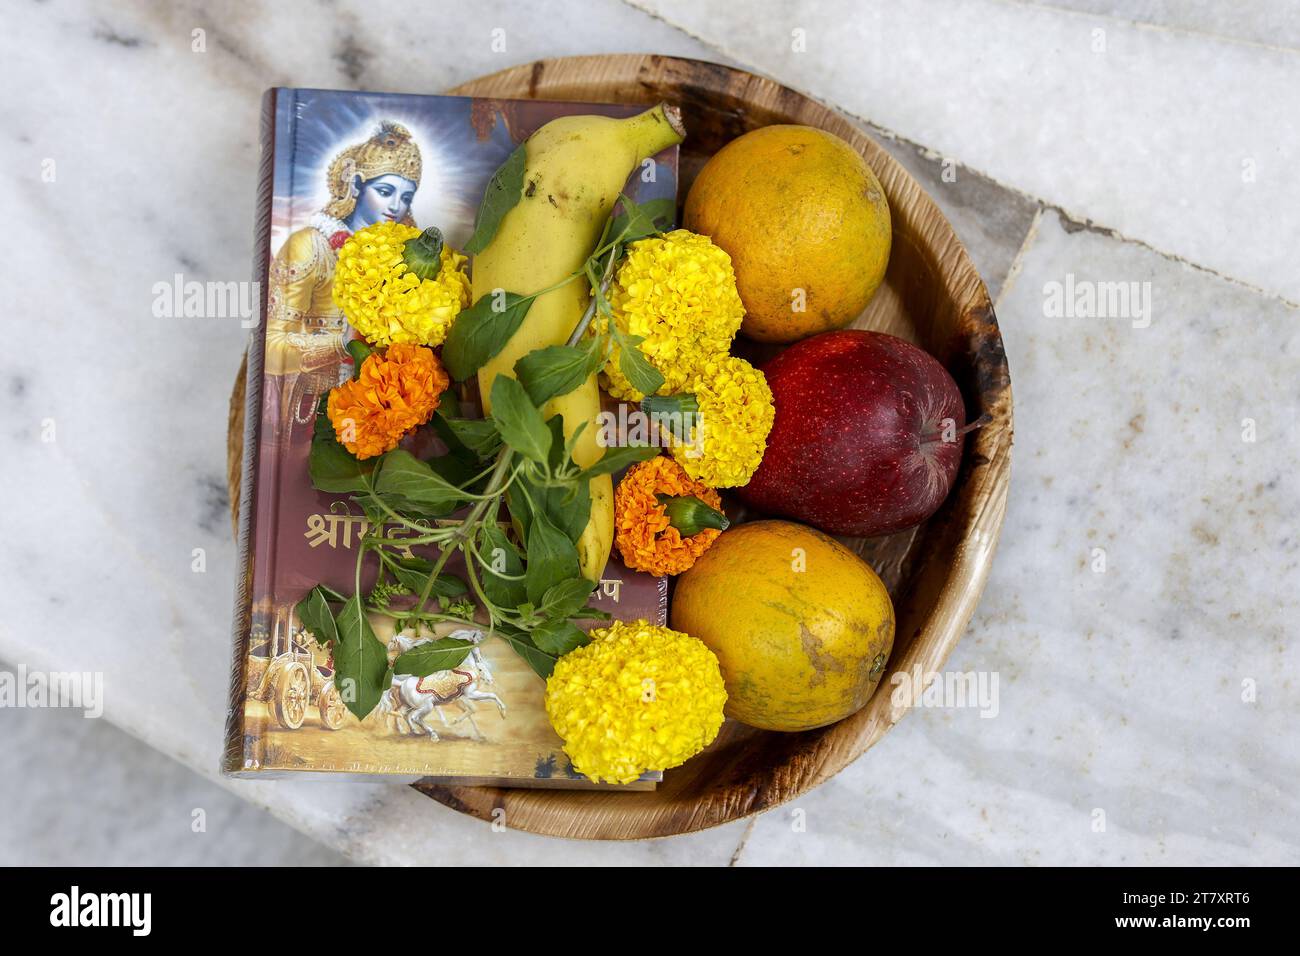 Offres au temple ISKCON, fleurs, fruits et Bhagavad Gita à Juhu, Mumbai, Inde, Asie Banque D'Images